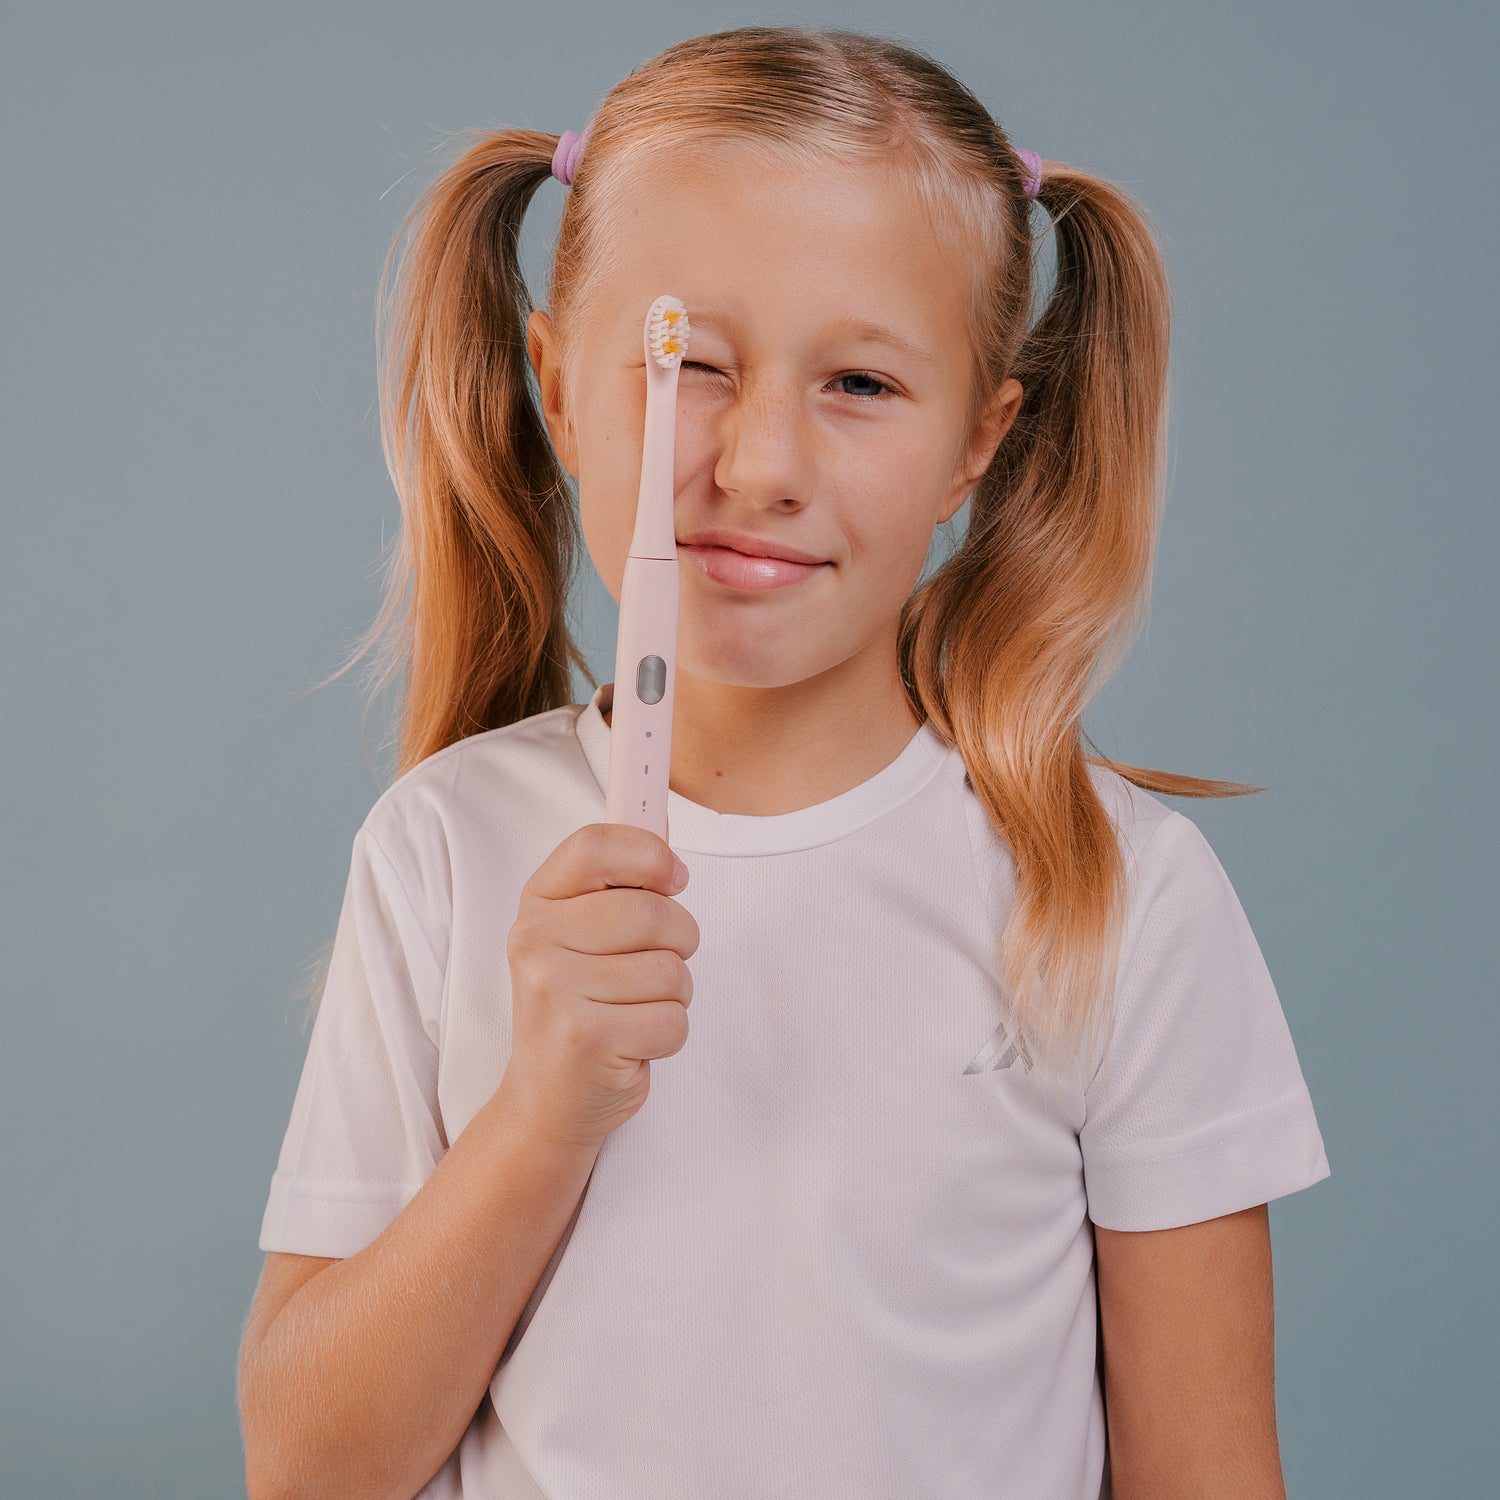 детская электрическая зубная щетка Smiley Light розовая купити дитячу електричну зубну щітку купить детскую электрическую зубную щетку електрична зубна щітка дитяча купить электрощетку детскую детская электрическая зубная щетка